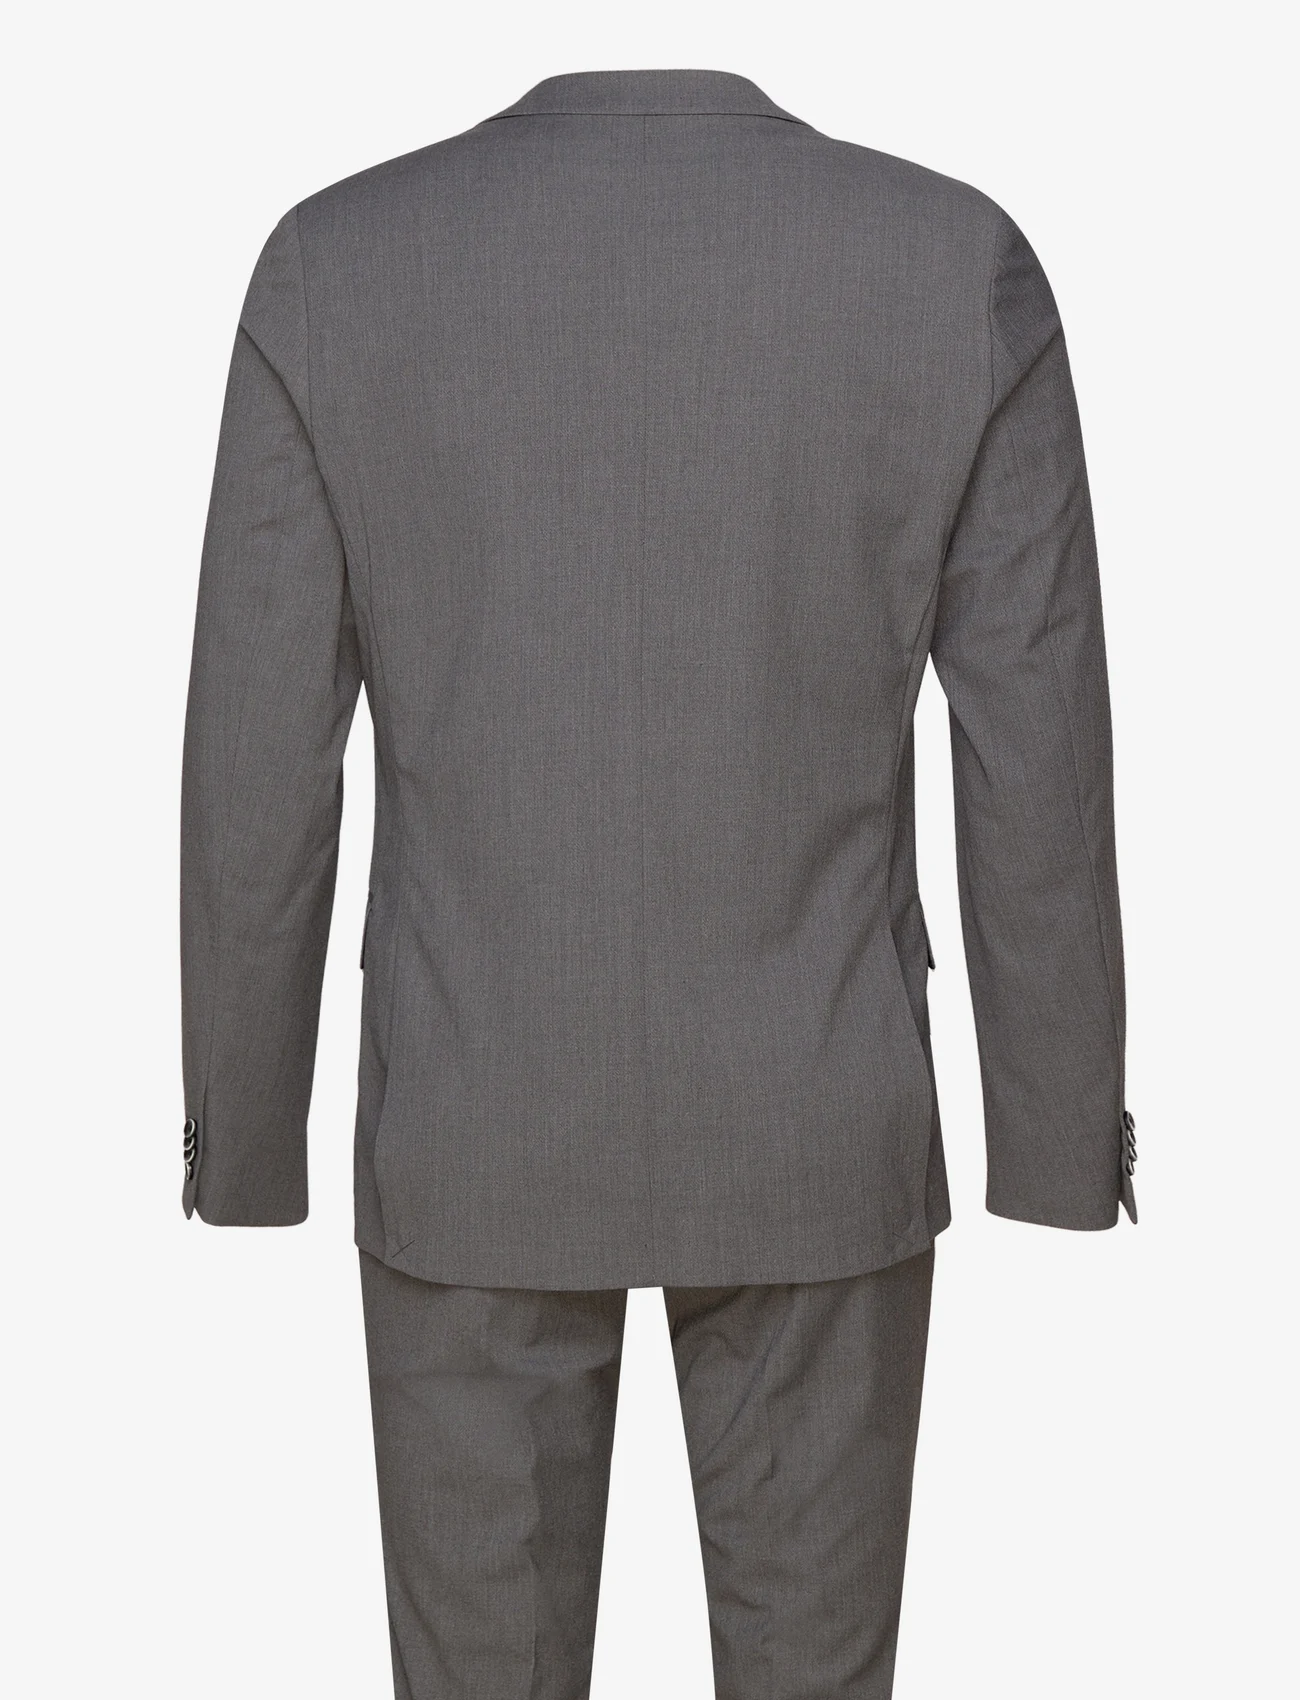 Bruun & Stengade - BS Sonoma Slim Fit Suit Set - dubbelknäppta kostymer - dark grey - 1